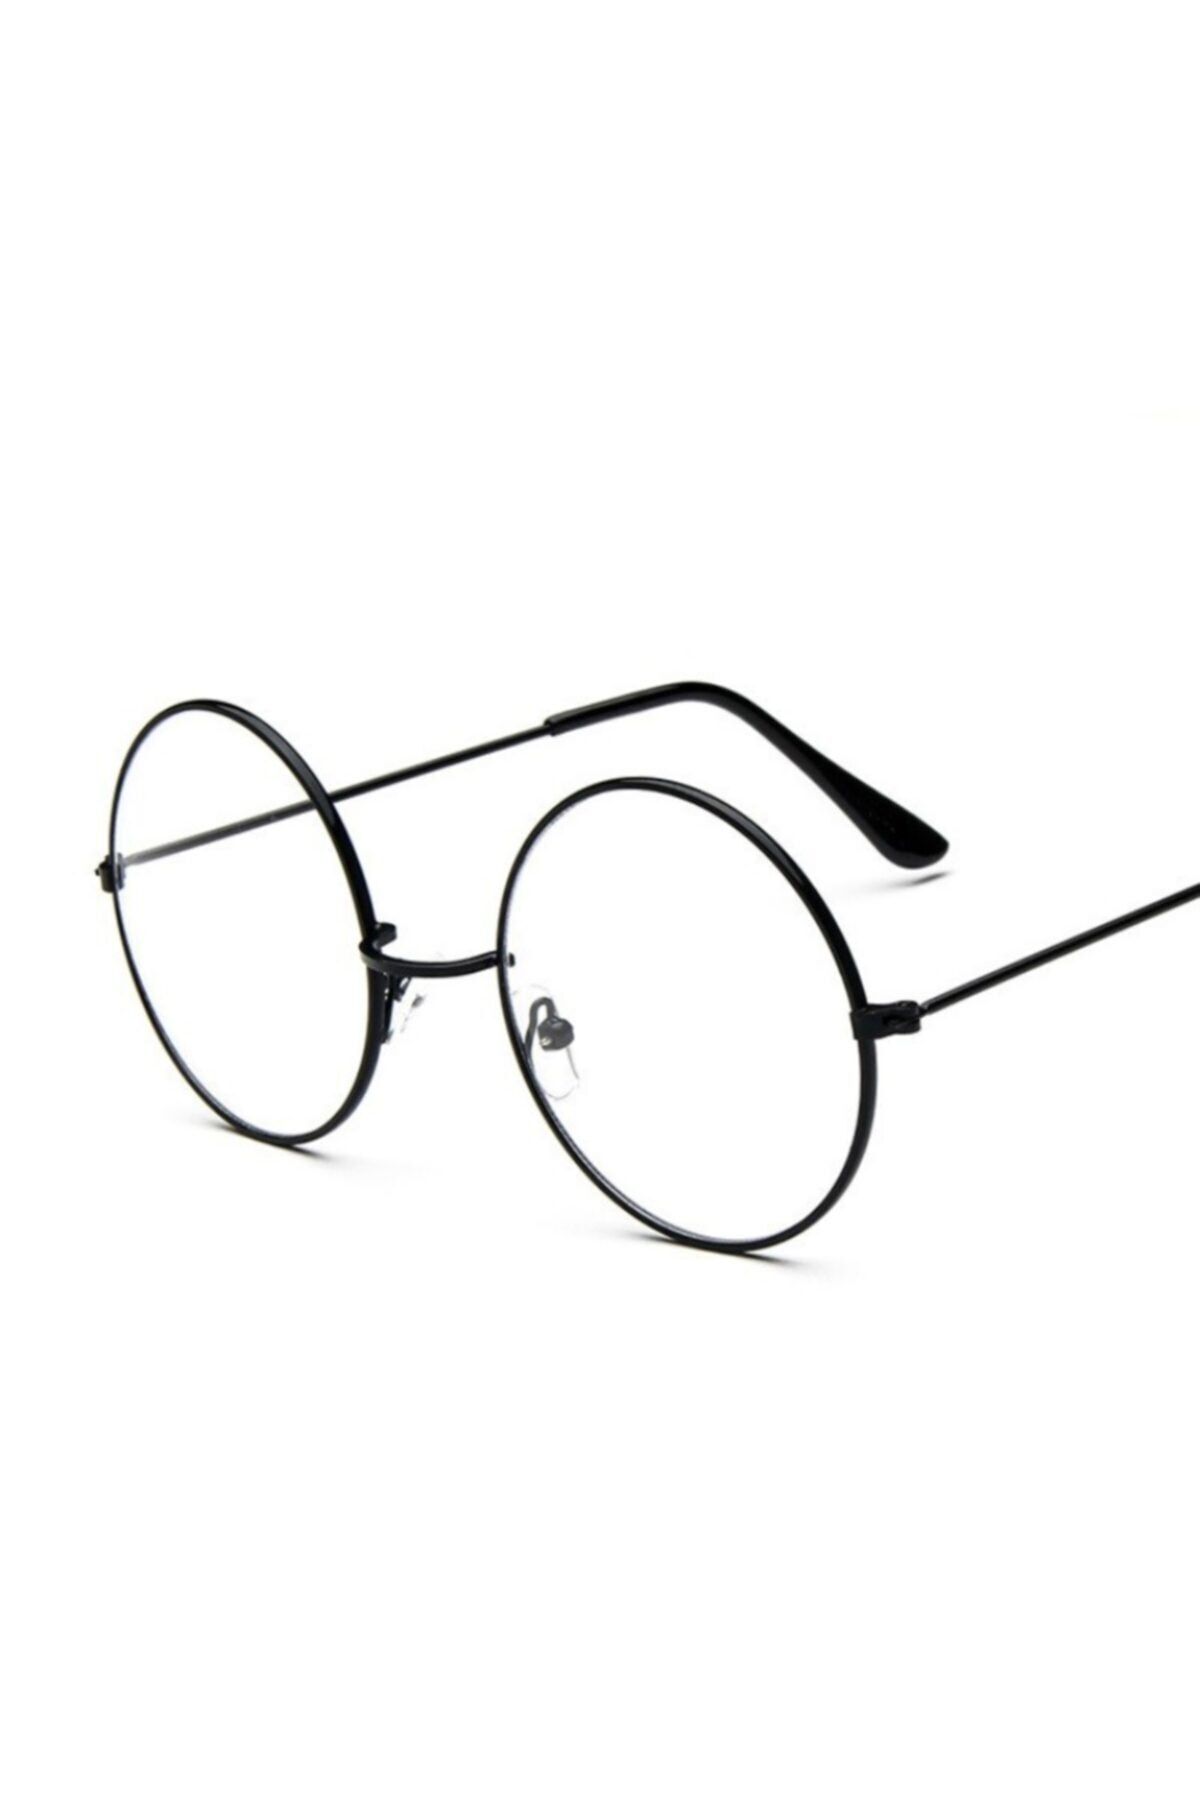 eticacollections Yuvarlak Model Gözlük - Harry Potter Gözlüğü Bakır